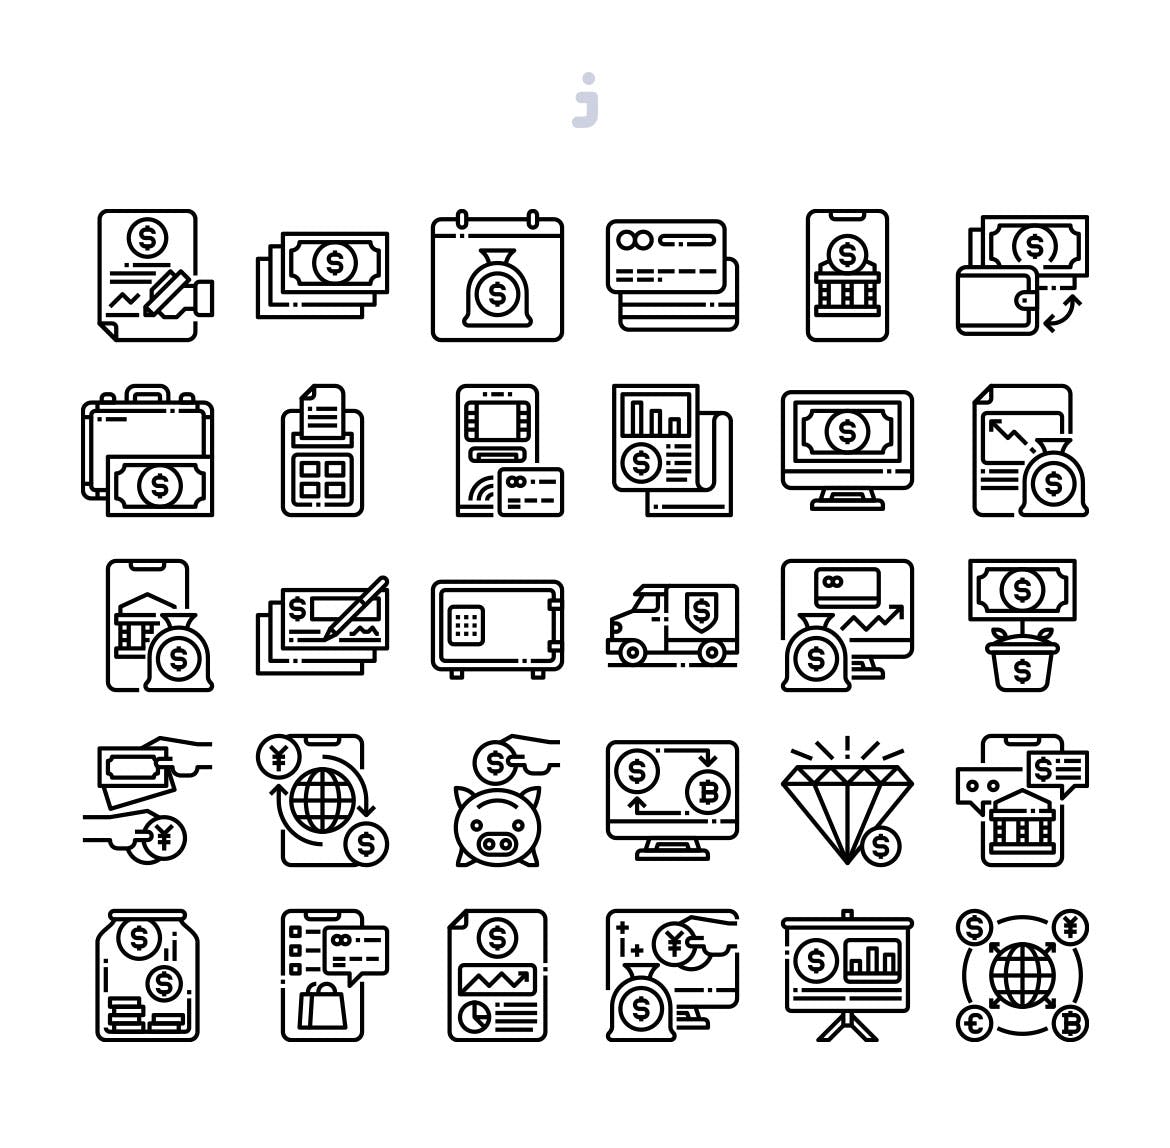 30枚银行主题矢量图标素材 30 Banking Icons插图(2)